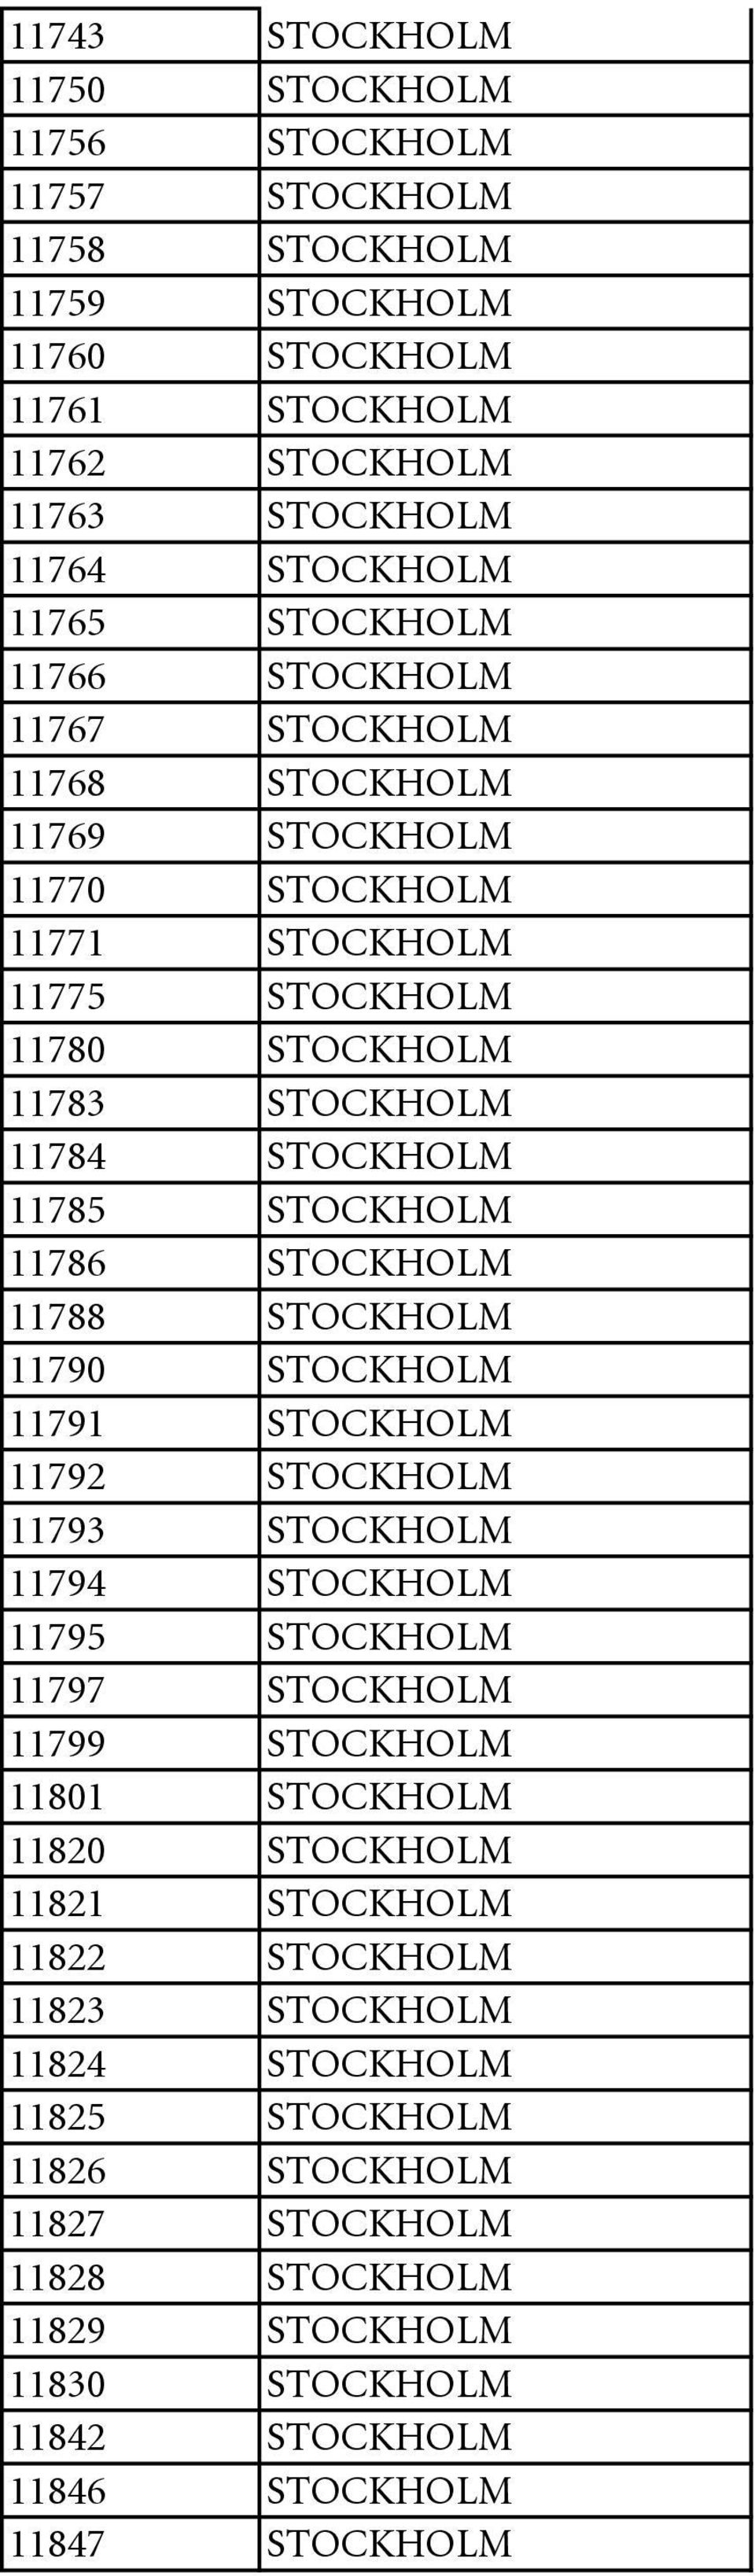 11788 STOCKHOLM 11790 STOCKHOLM 11791 STOCKHOLM 11792 STOCKHOLM 11793 STOCKHOLM 11794 STOCKHOLM 11795 STOCKHOLM 11797 STOCKHOLM 11799 STOCKHOLM 11801 STOCKHOLM 11820 STOCKHOLM 11821 STOCKHOLM